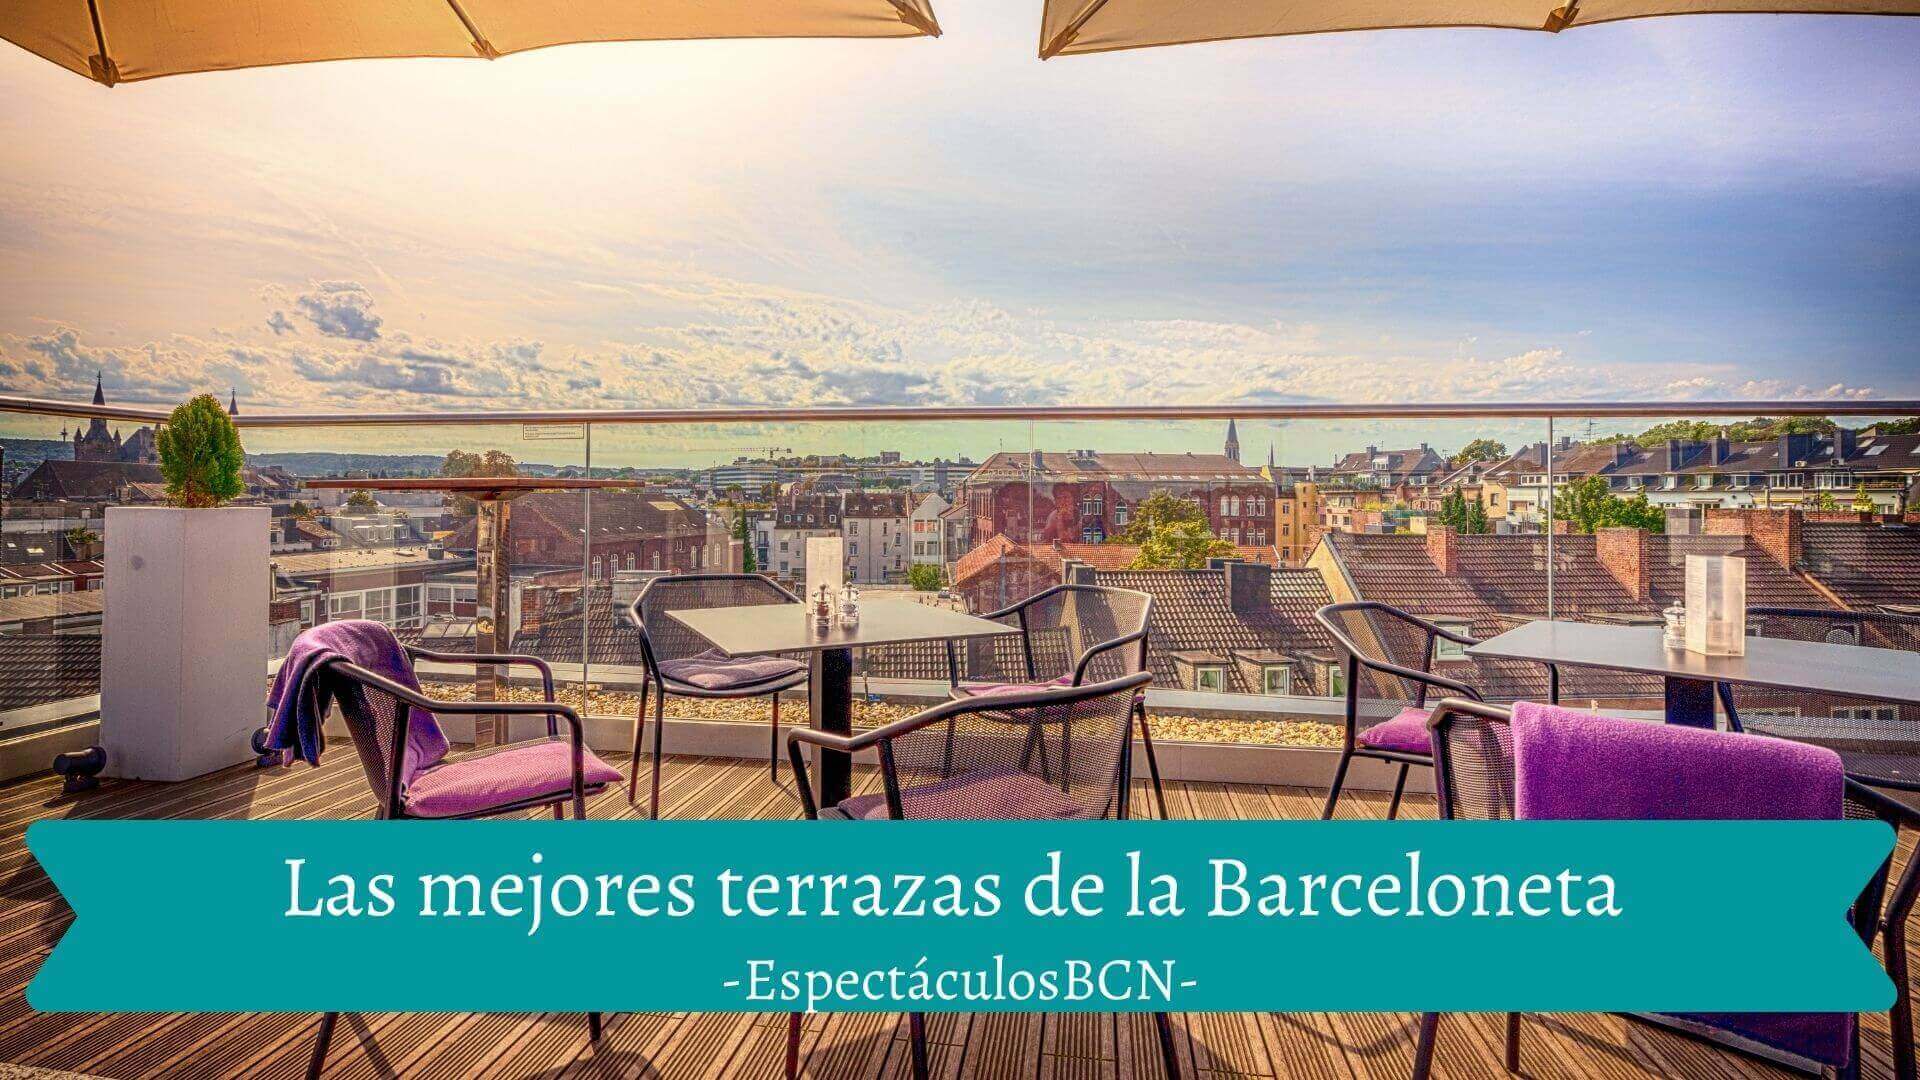 Las mejores terrazas de la Barceloneta